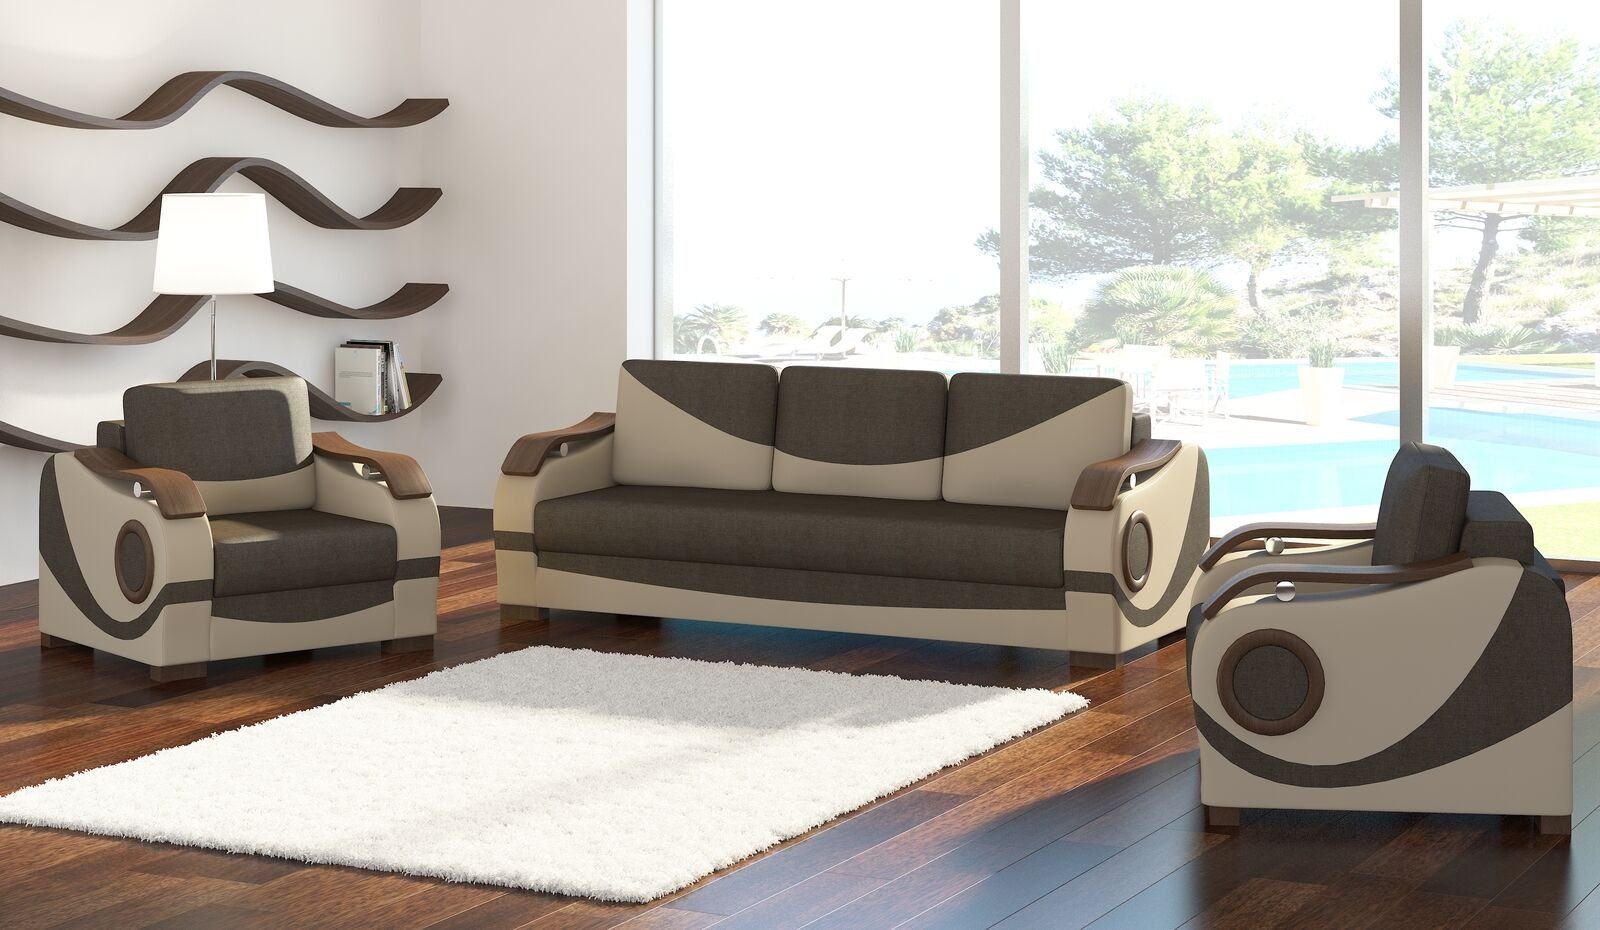 JVmoebel Sofa Sofagarnitur Puerto 3+1+1 mit Bettfunktion Set Couch Polster Sofas, Made in Europe Braun/Beige